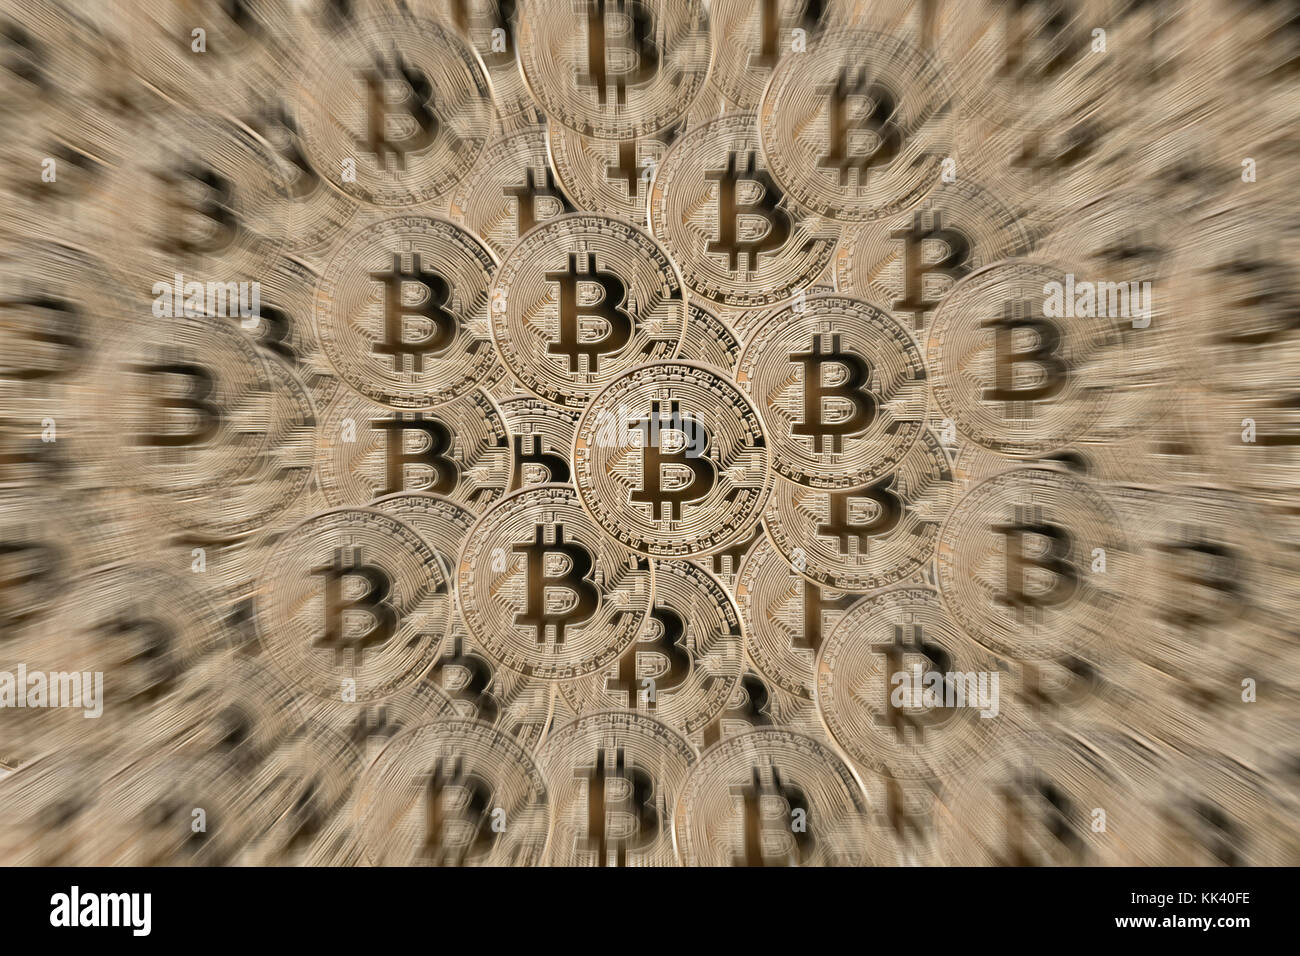 Bitcoin symbolphoto Stock Photo